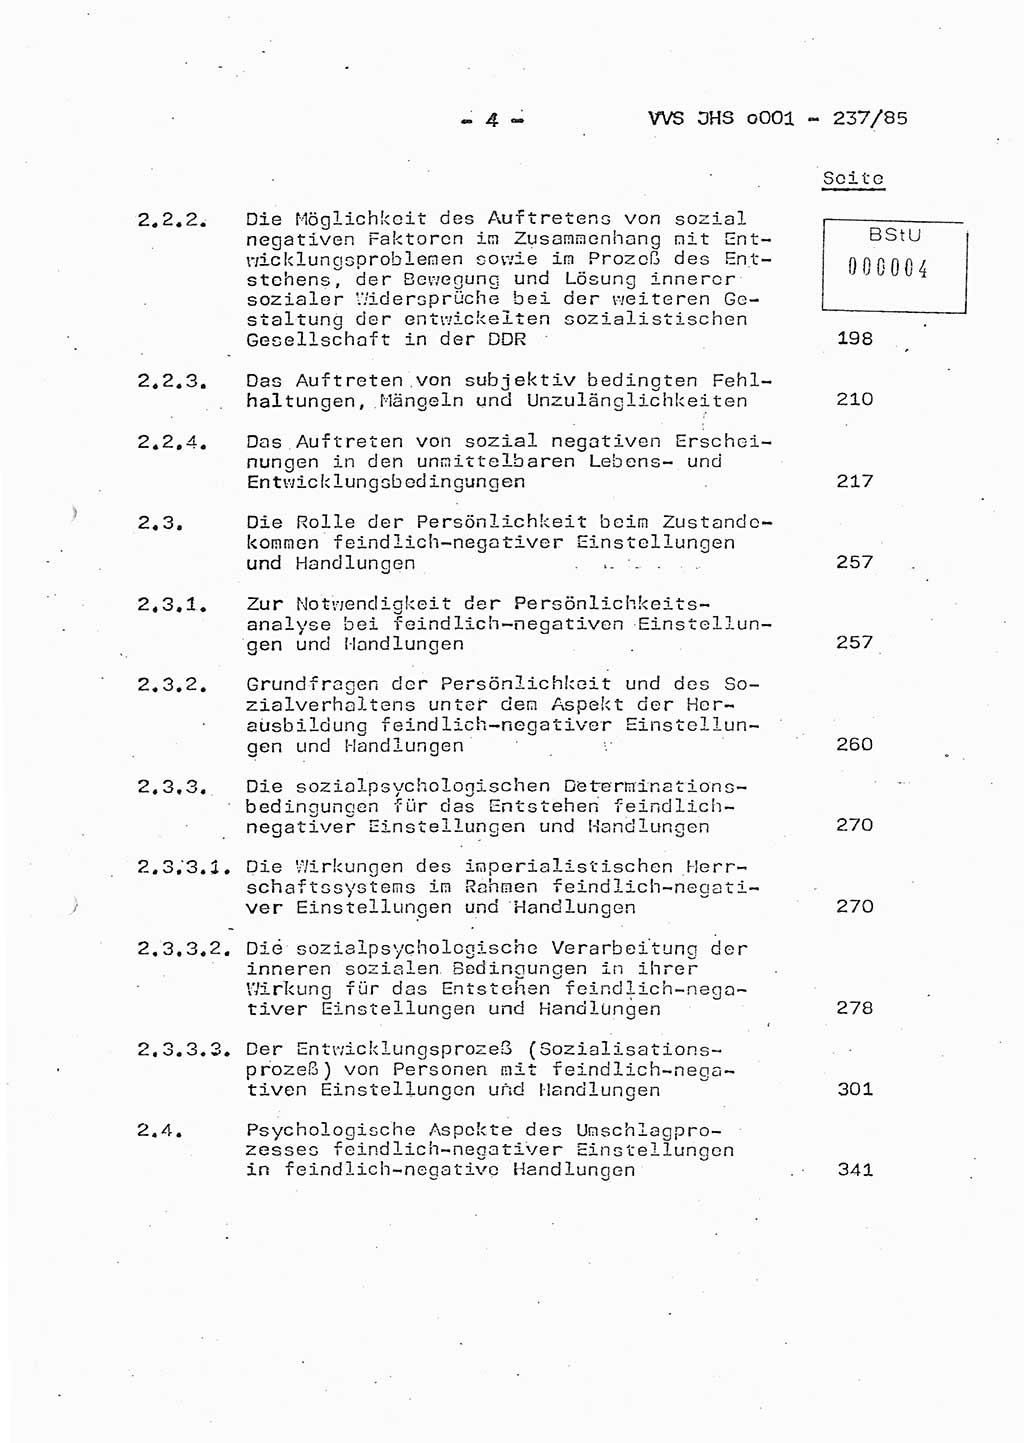 Dissertation Oberstleutnant Peter Jakulski (JHS), Oberstleutnat Christian Rudolph (HA Ⅸ), Major Horst Böttger (ZMD), Major Wolfgang Grüneberg (JHS), Major Albert Meutsch (JHS), Ministerium für Staatssicherheit (MfS) [Deutsche Demokratische Republik (DDR)], Juristische Hochschule (JHS), Vertrauliche Verschlußsache (VVS) o001-237/85, Potsdam 1985, Seite 4 (Diss. MfS DDR JHS VVS o001-237/85 1985, S. 4)